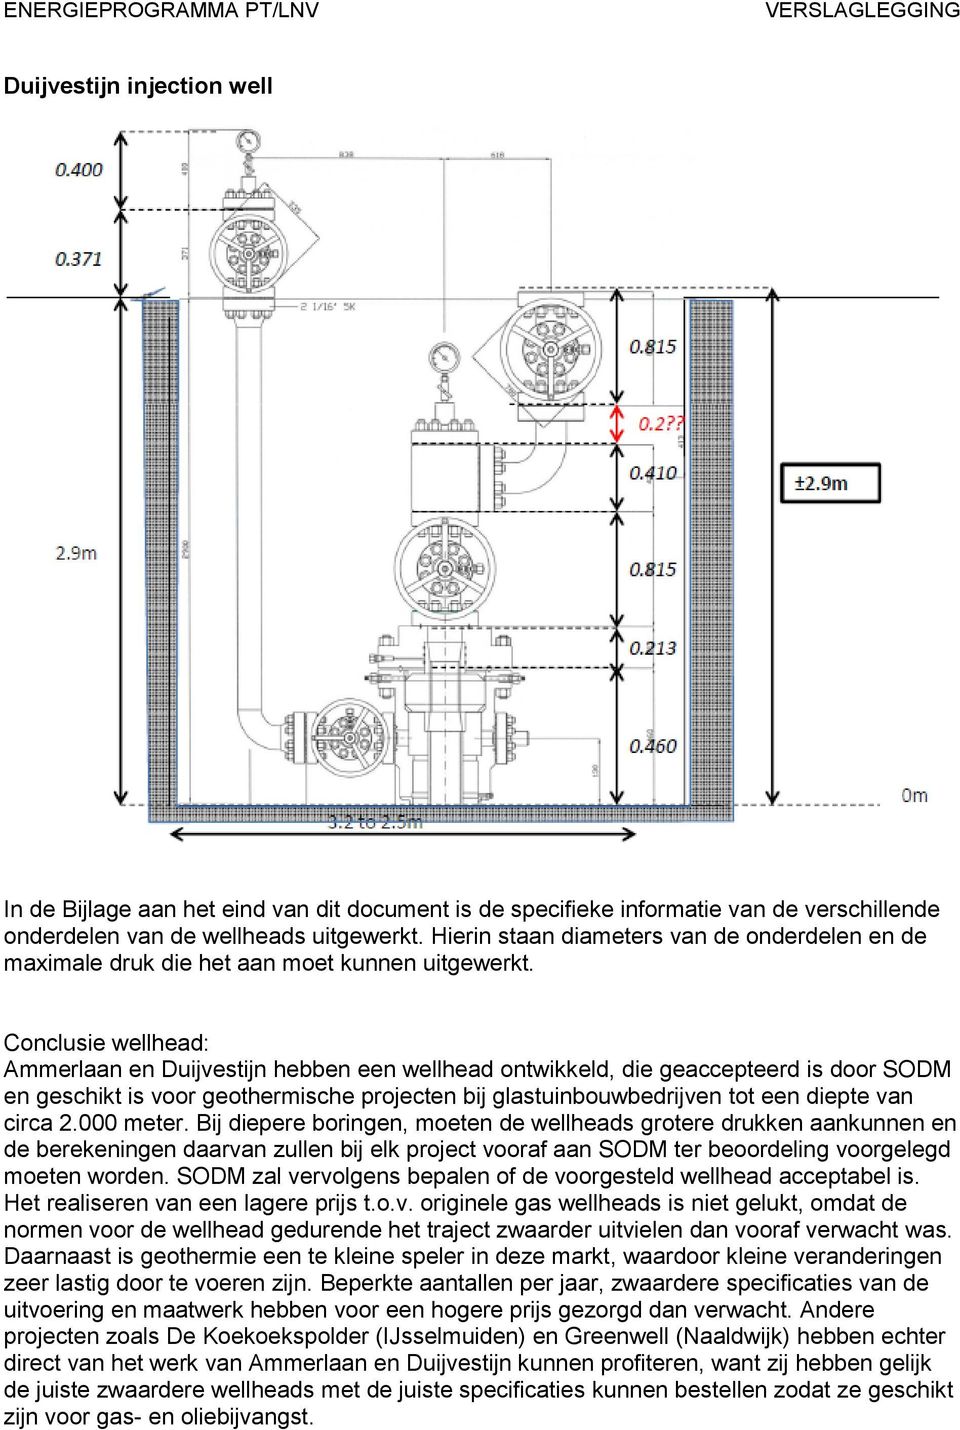 Conclusie wellhead: Ammerlaan en Duijvestijn hebben een wellhead ontwikkeld, die geaccepteerd is door SODM en geschikt is voor geothermische projecten bij glastuinbouwbedrijven tot een diepte van